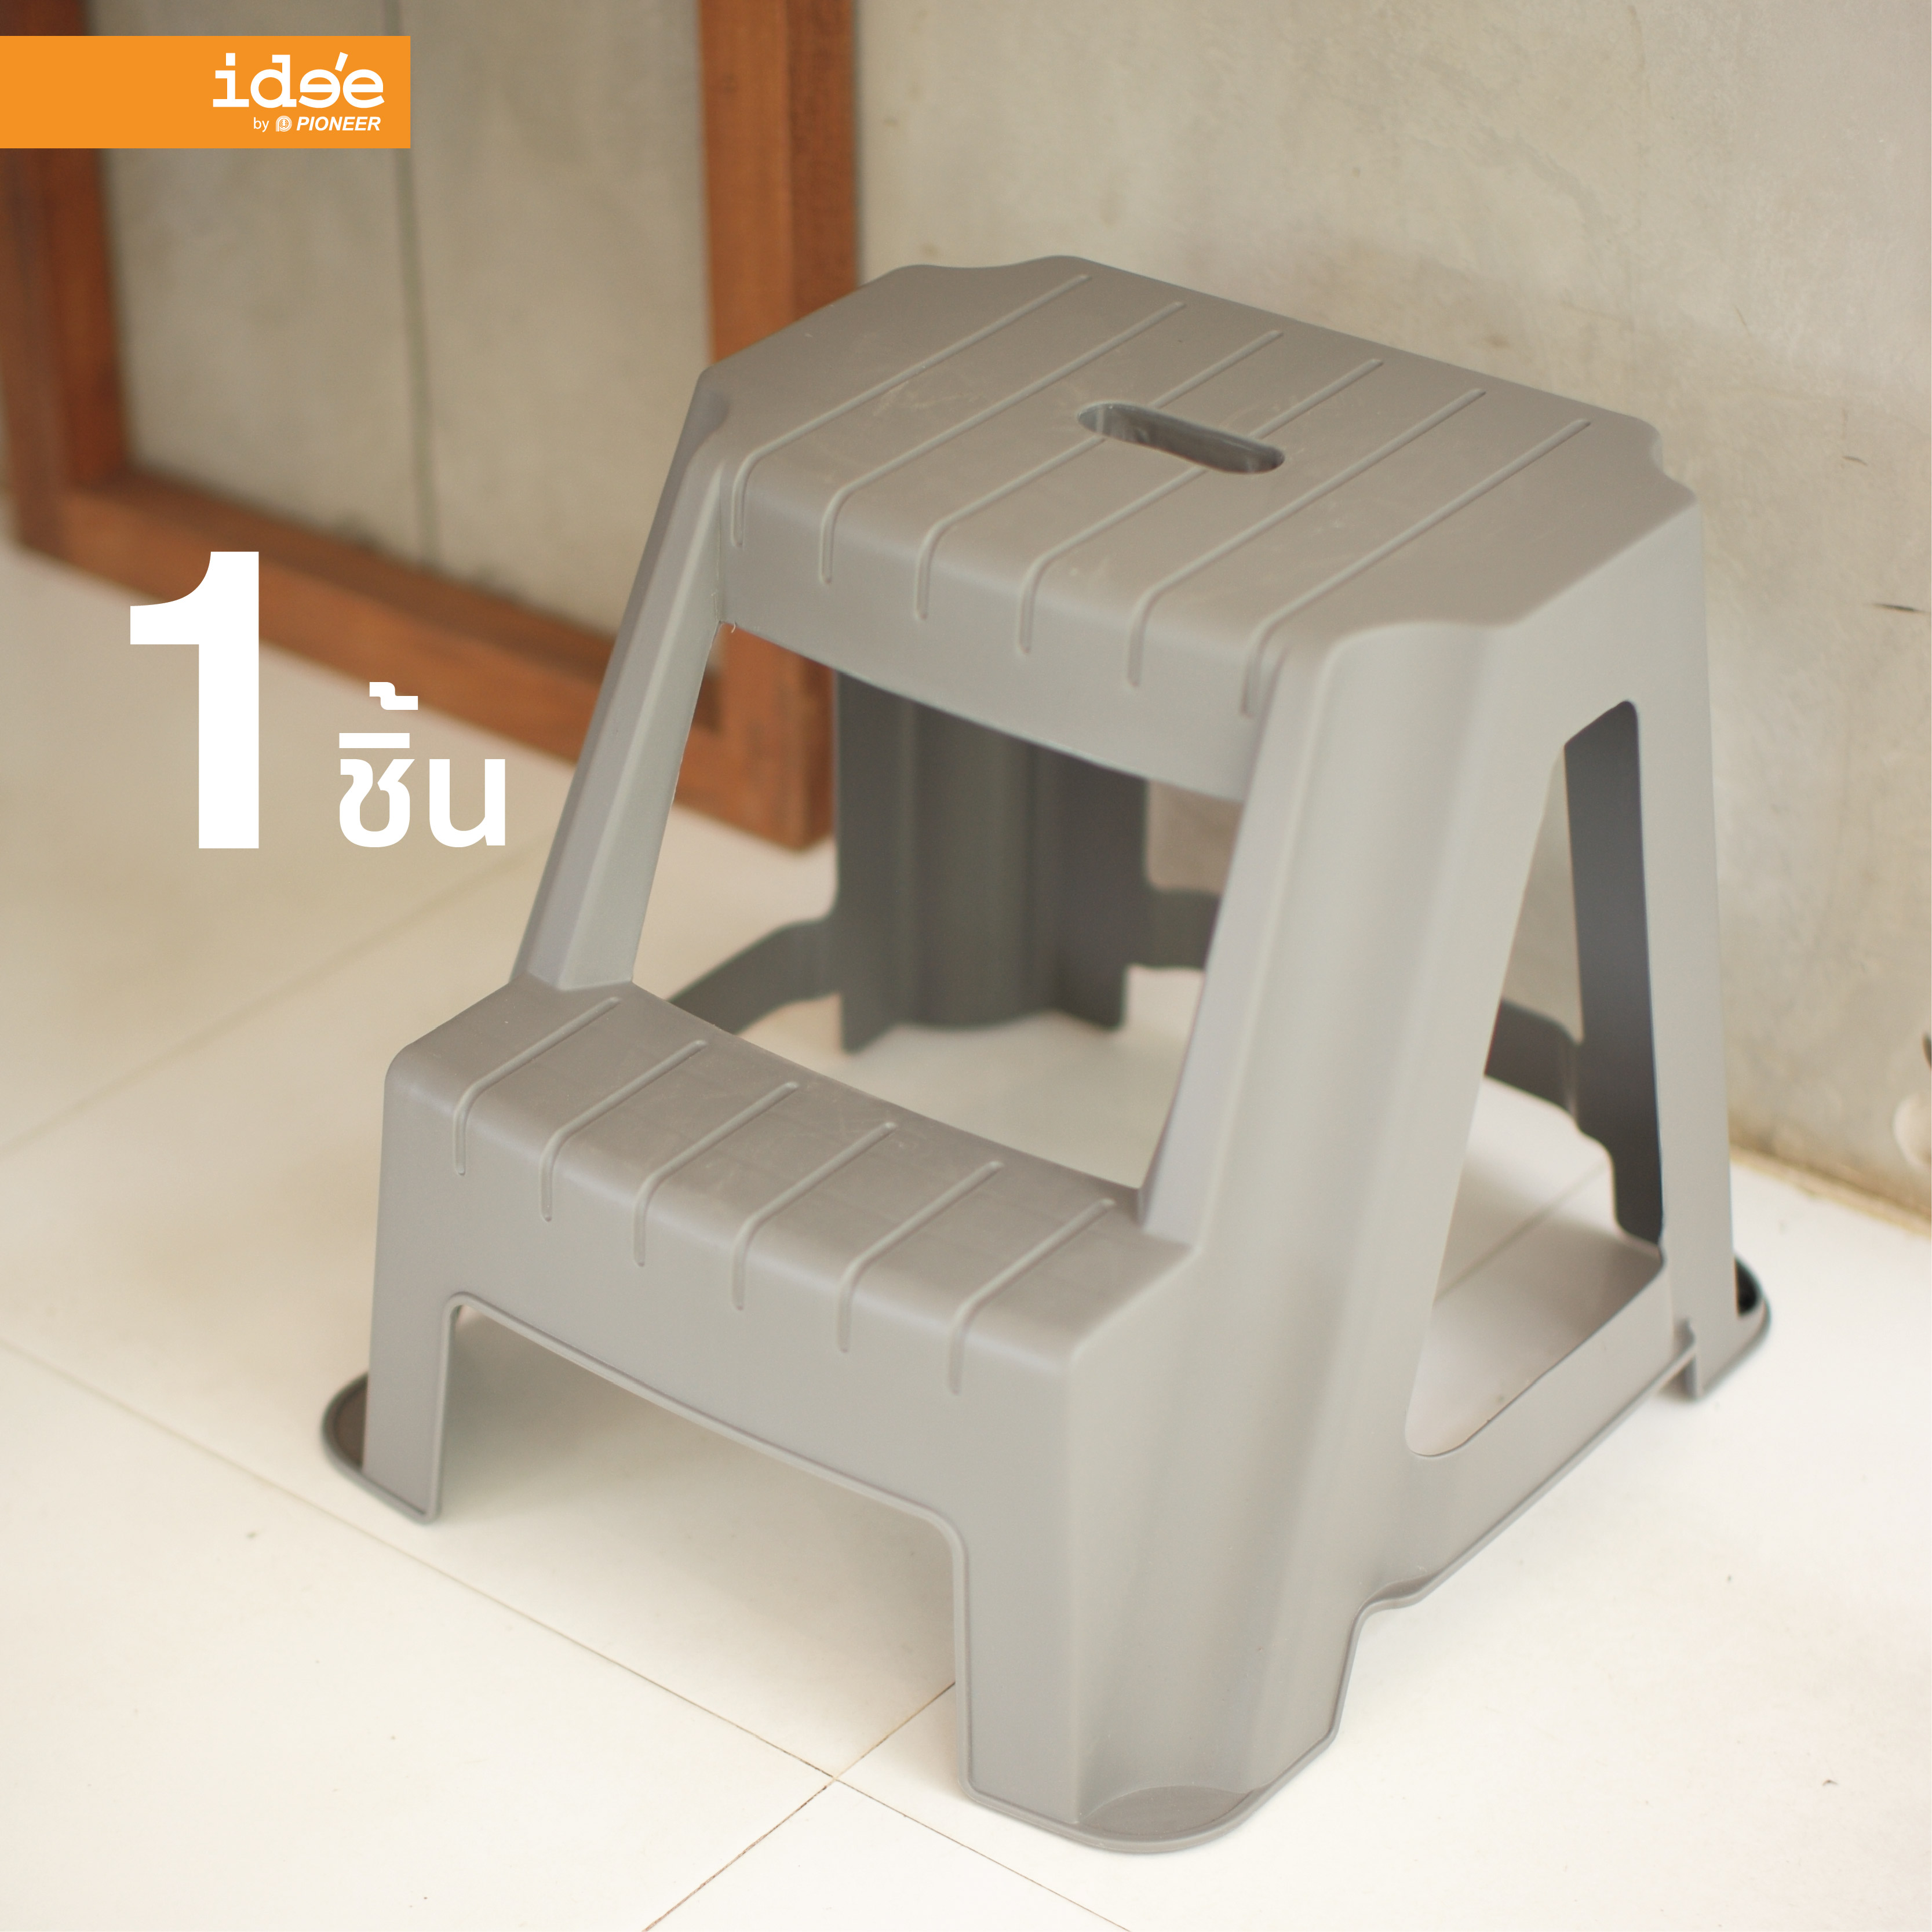 ide'e [1 PCS] PN9140 2 Step Stand เก้าอี้บันได 2 ขั้น มีที่จับง่ายต่อเคลื่อนย้าย ใช้งานสะดวก แข็งแรง ทนทาน